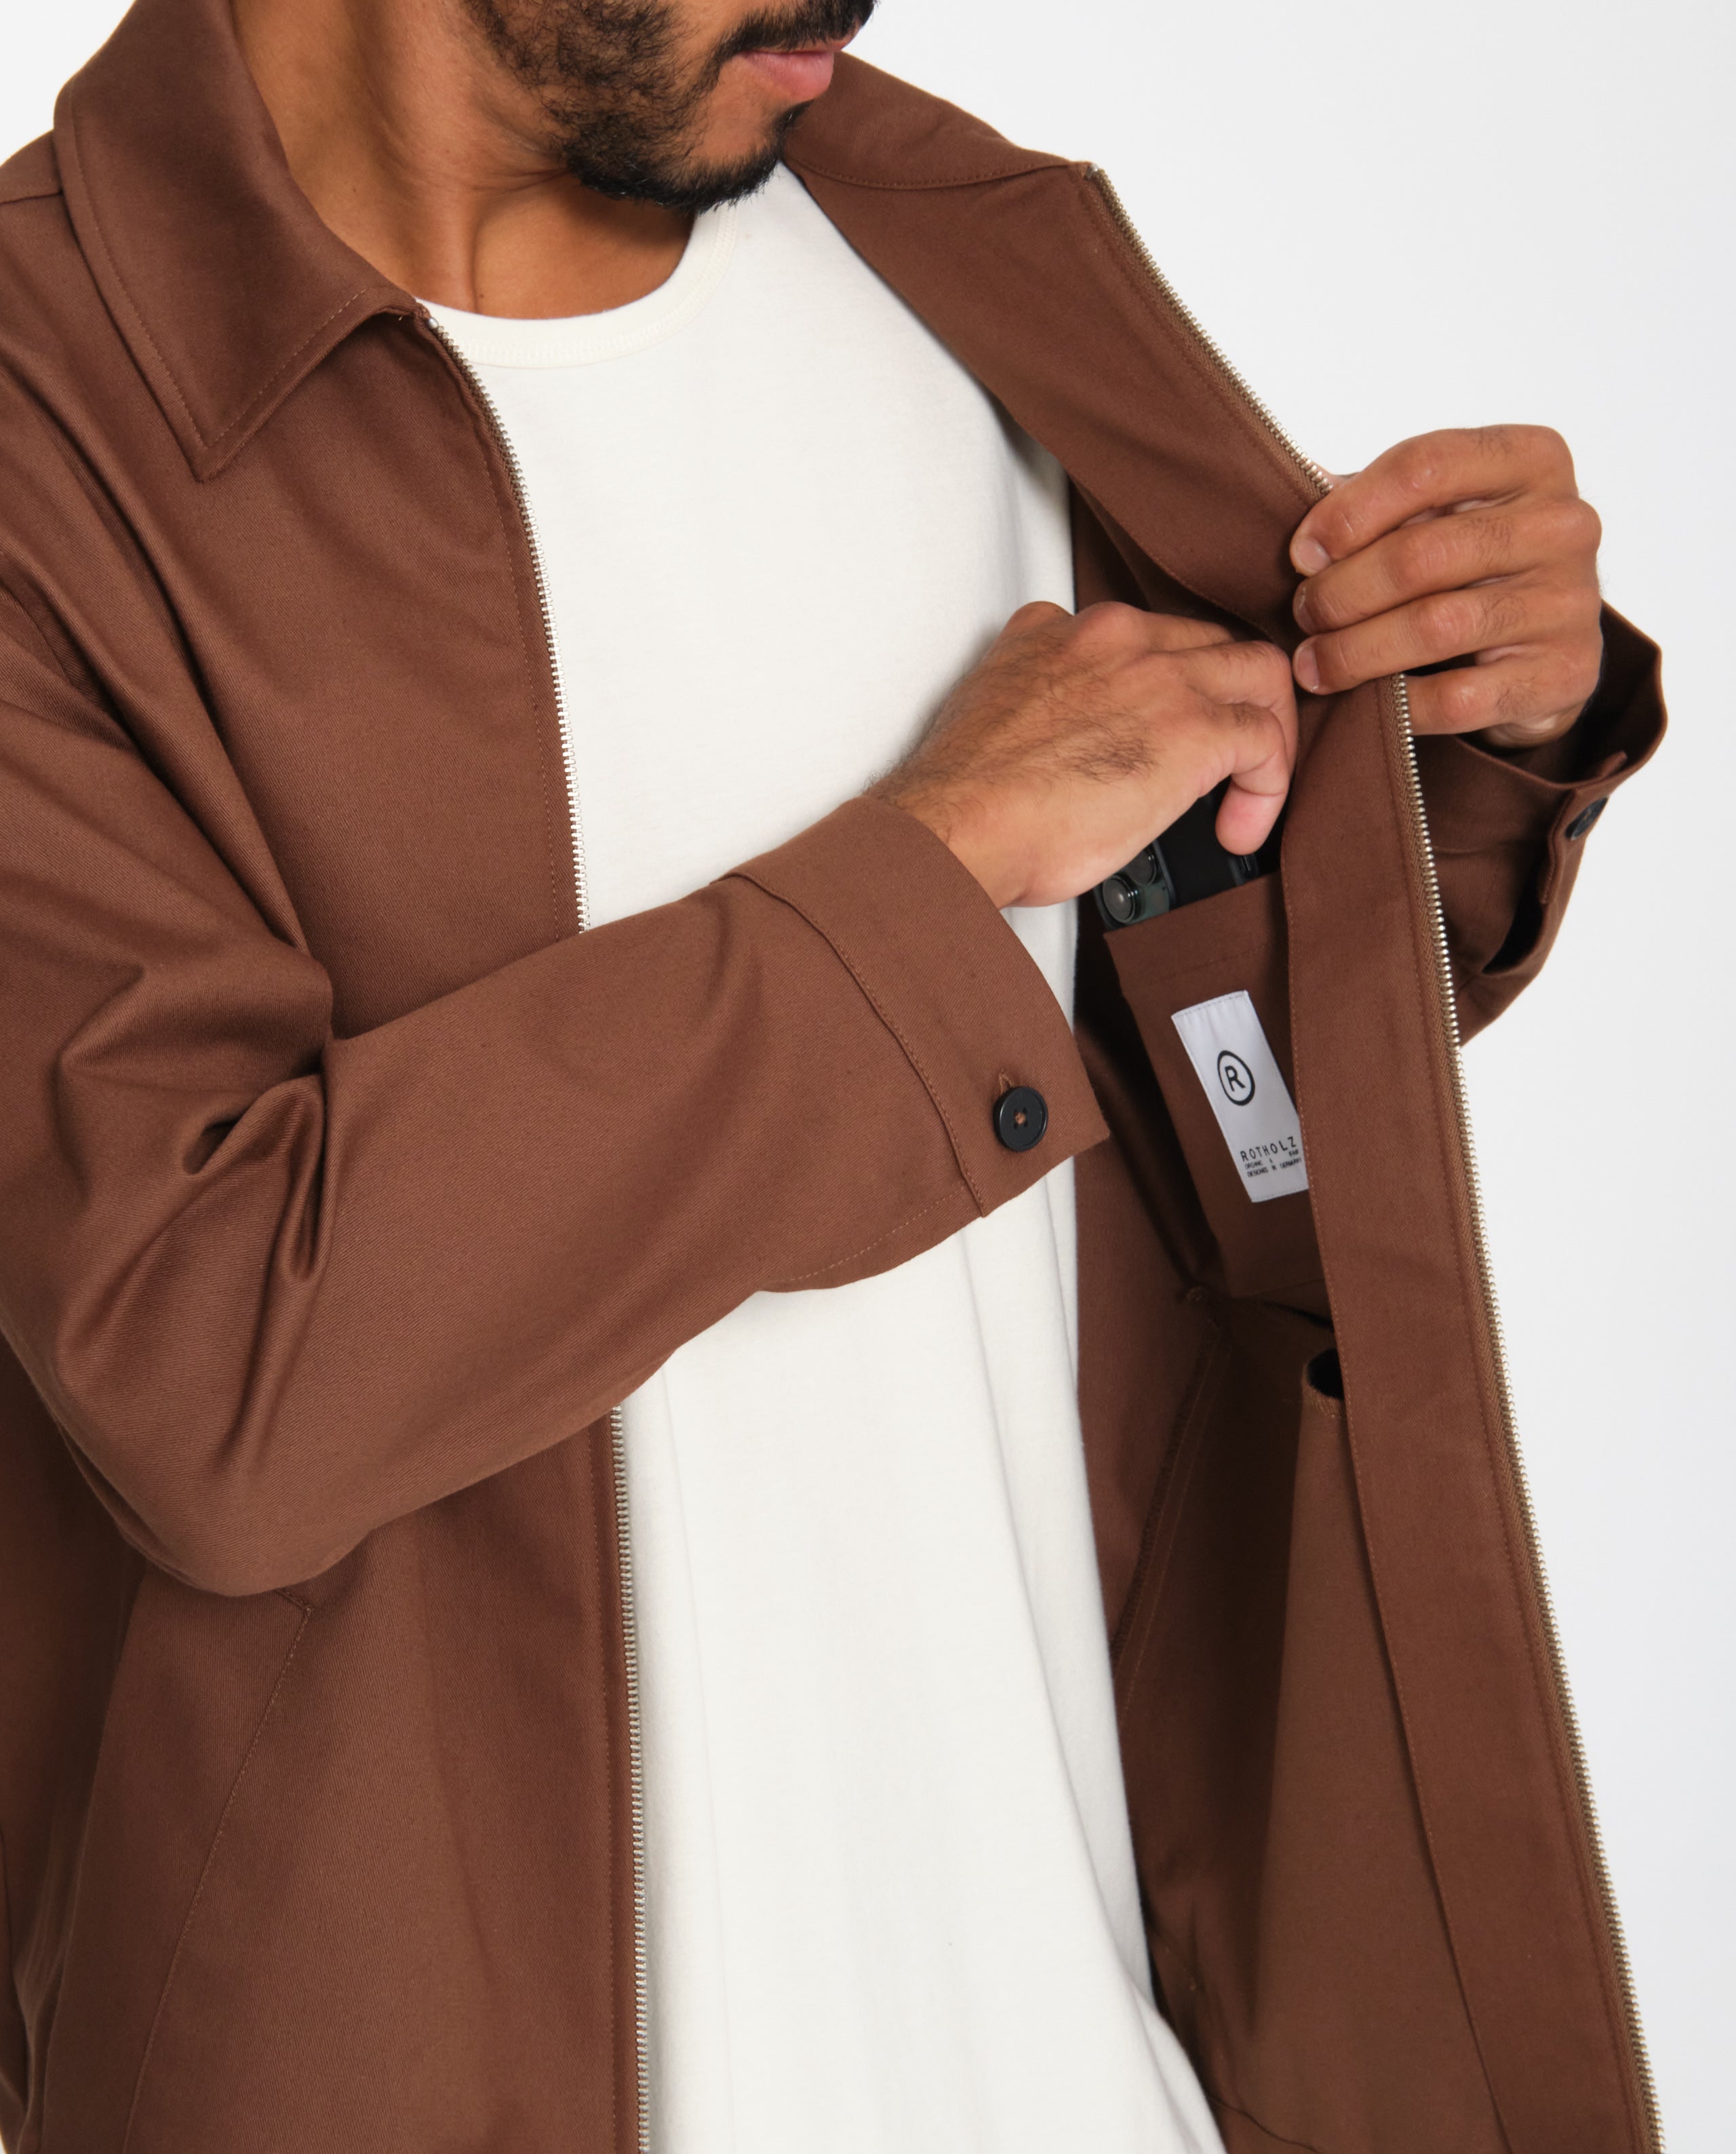 marché commun rotholz veste homme zippée coton biologique camel éthique